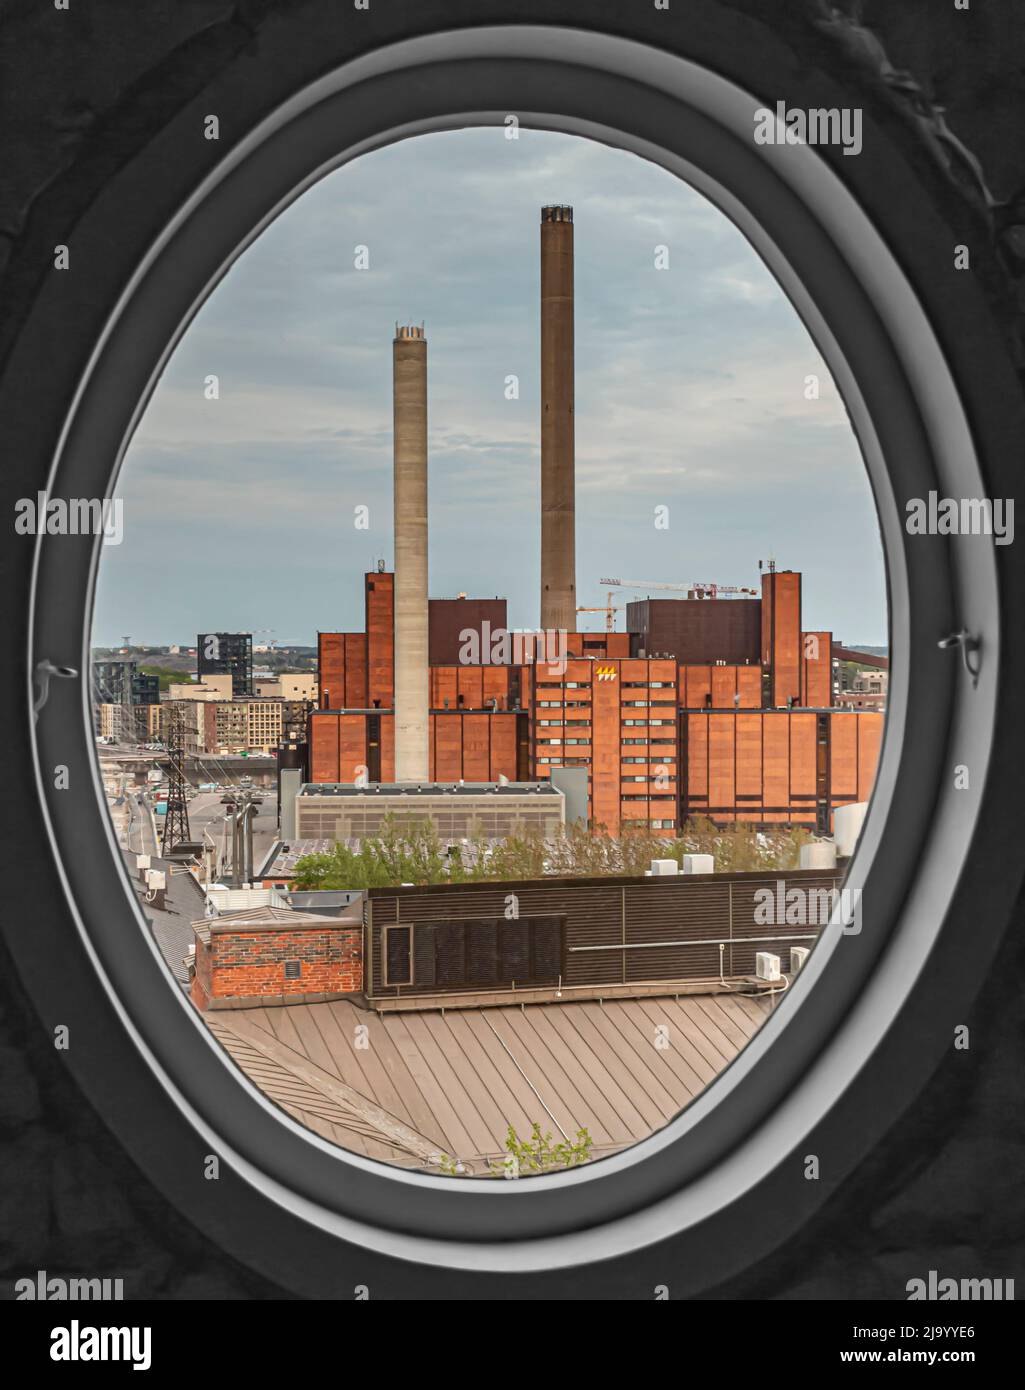 Das Kraftwerk Helen Ltd Hanasaari in Parrukatu, Sörnäinen, Helsinki, Finnland, wird durch ein ovales Fenster betrachtet. Stockfoto